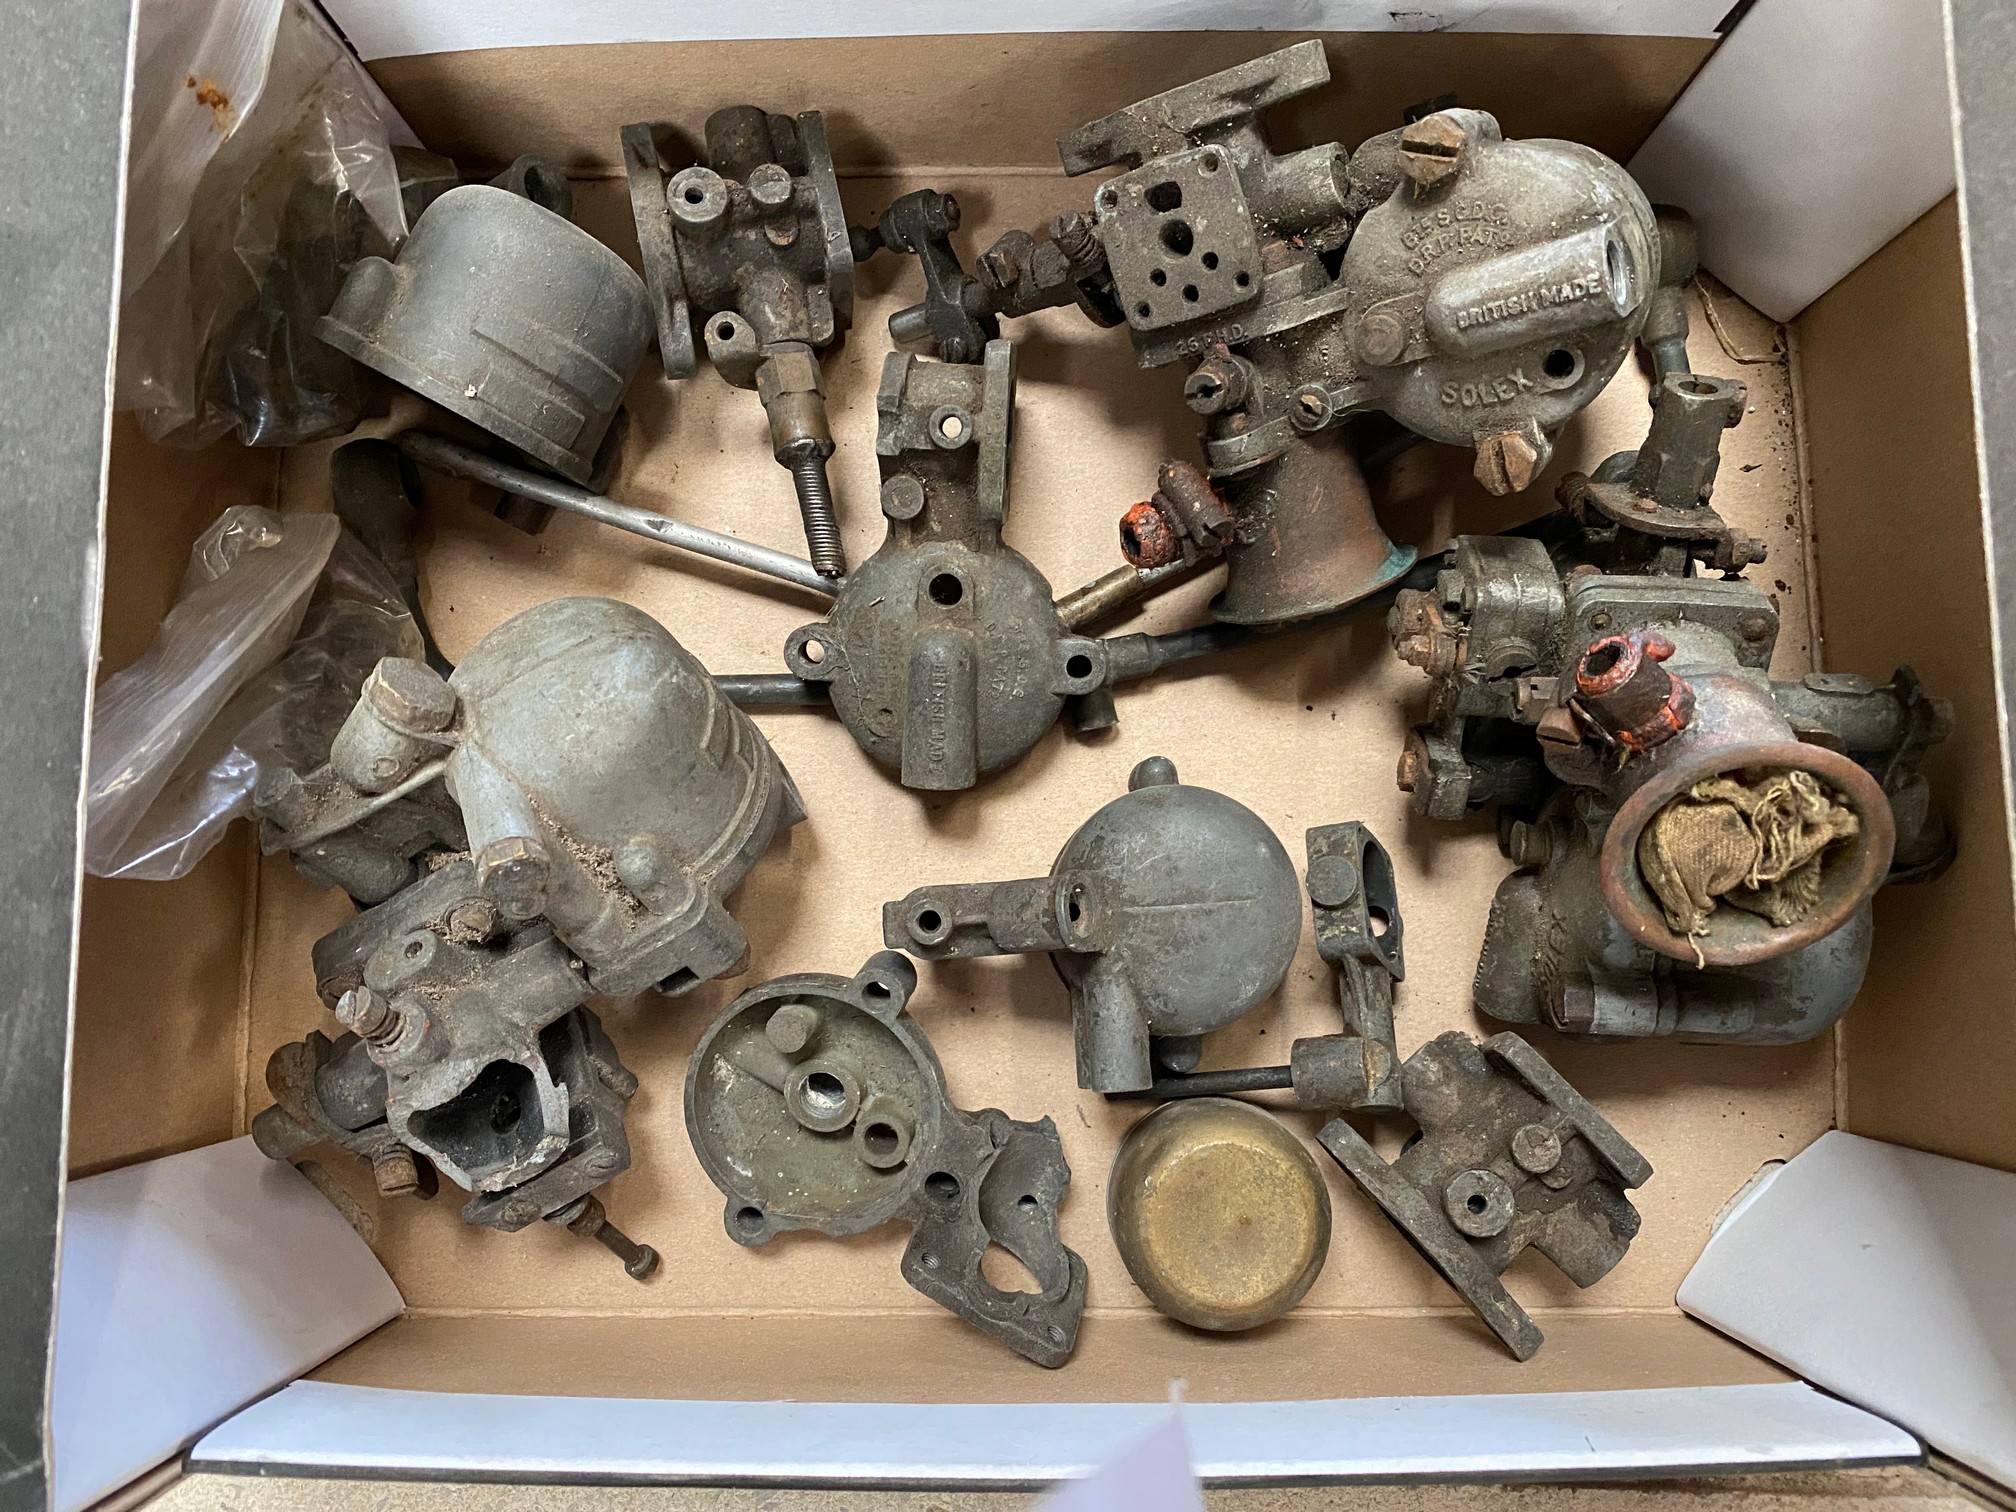 A box of Solex carburettor parts.